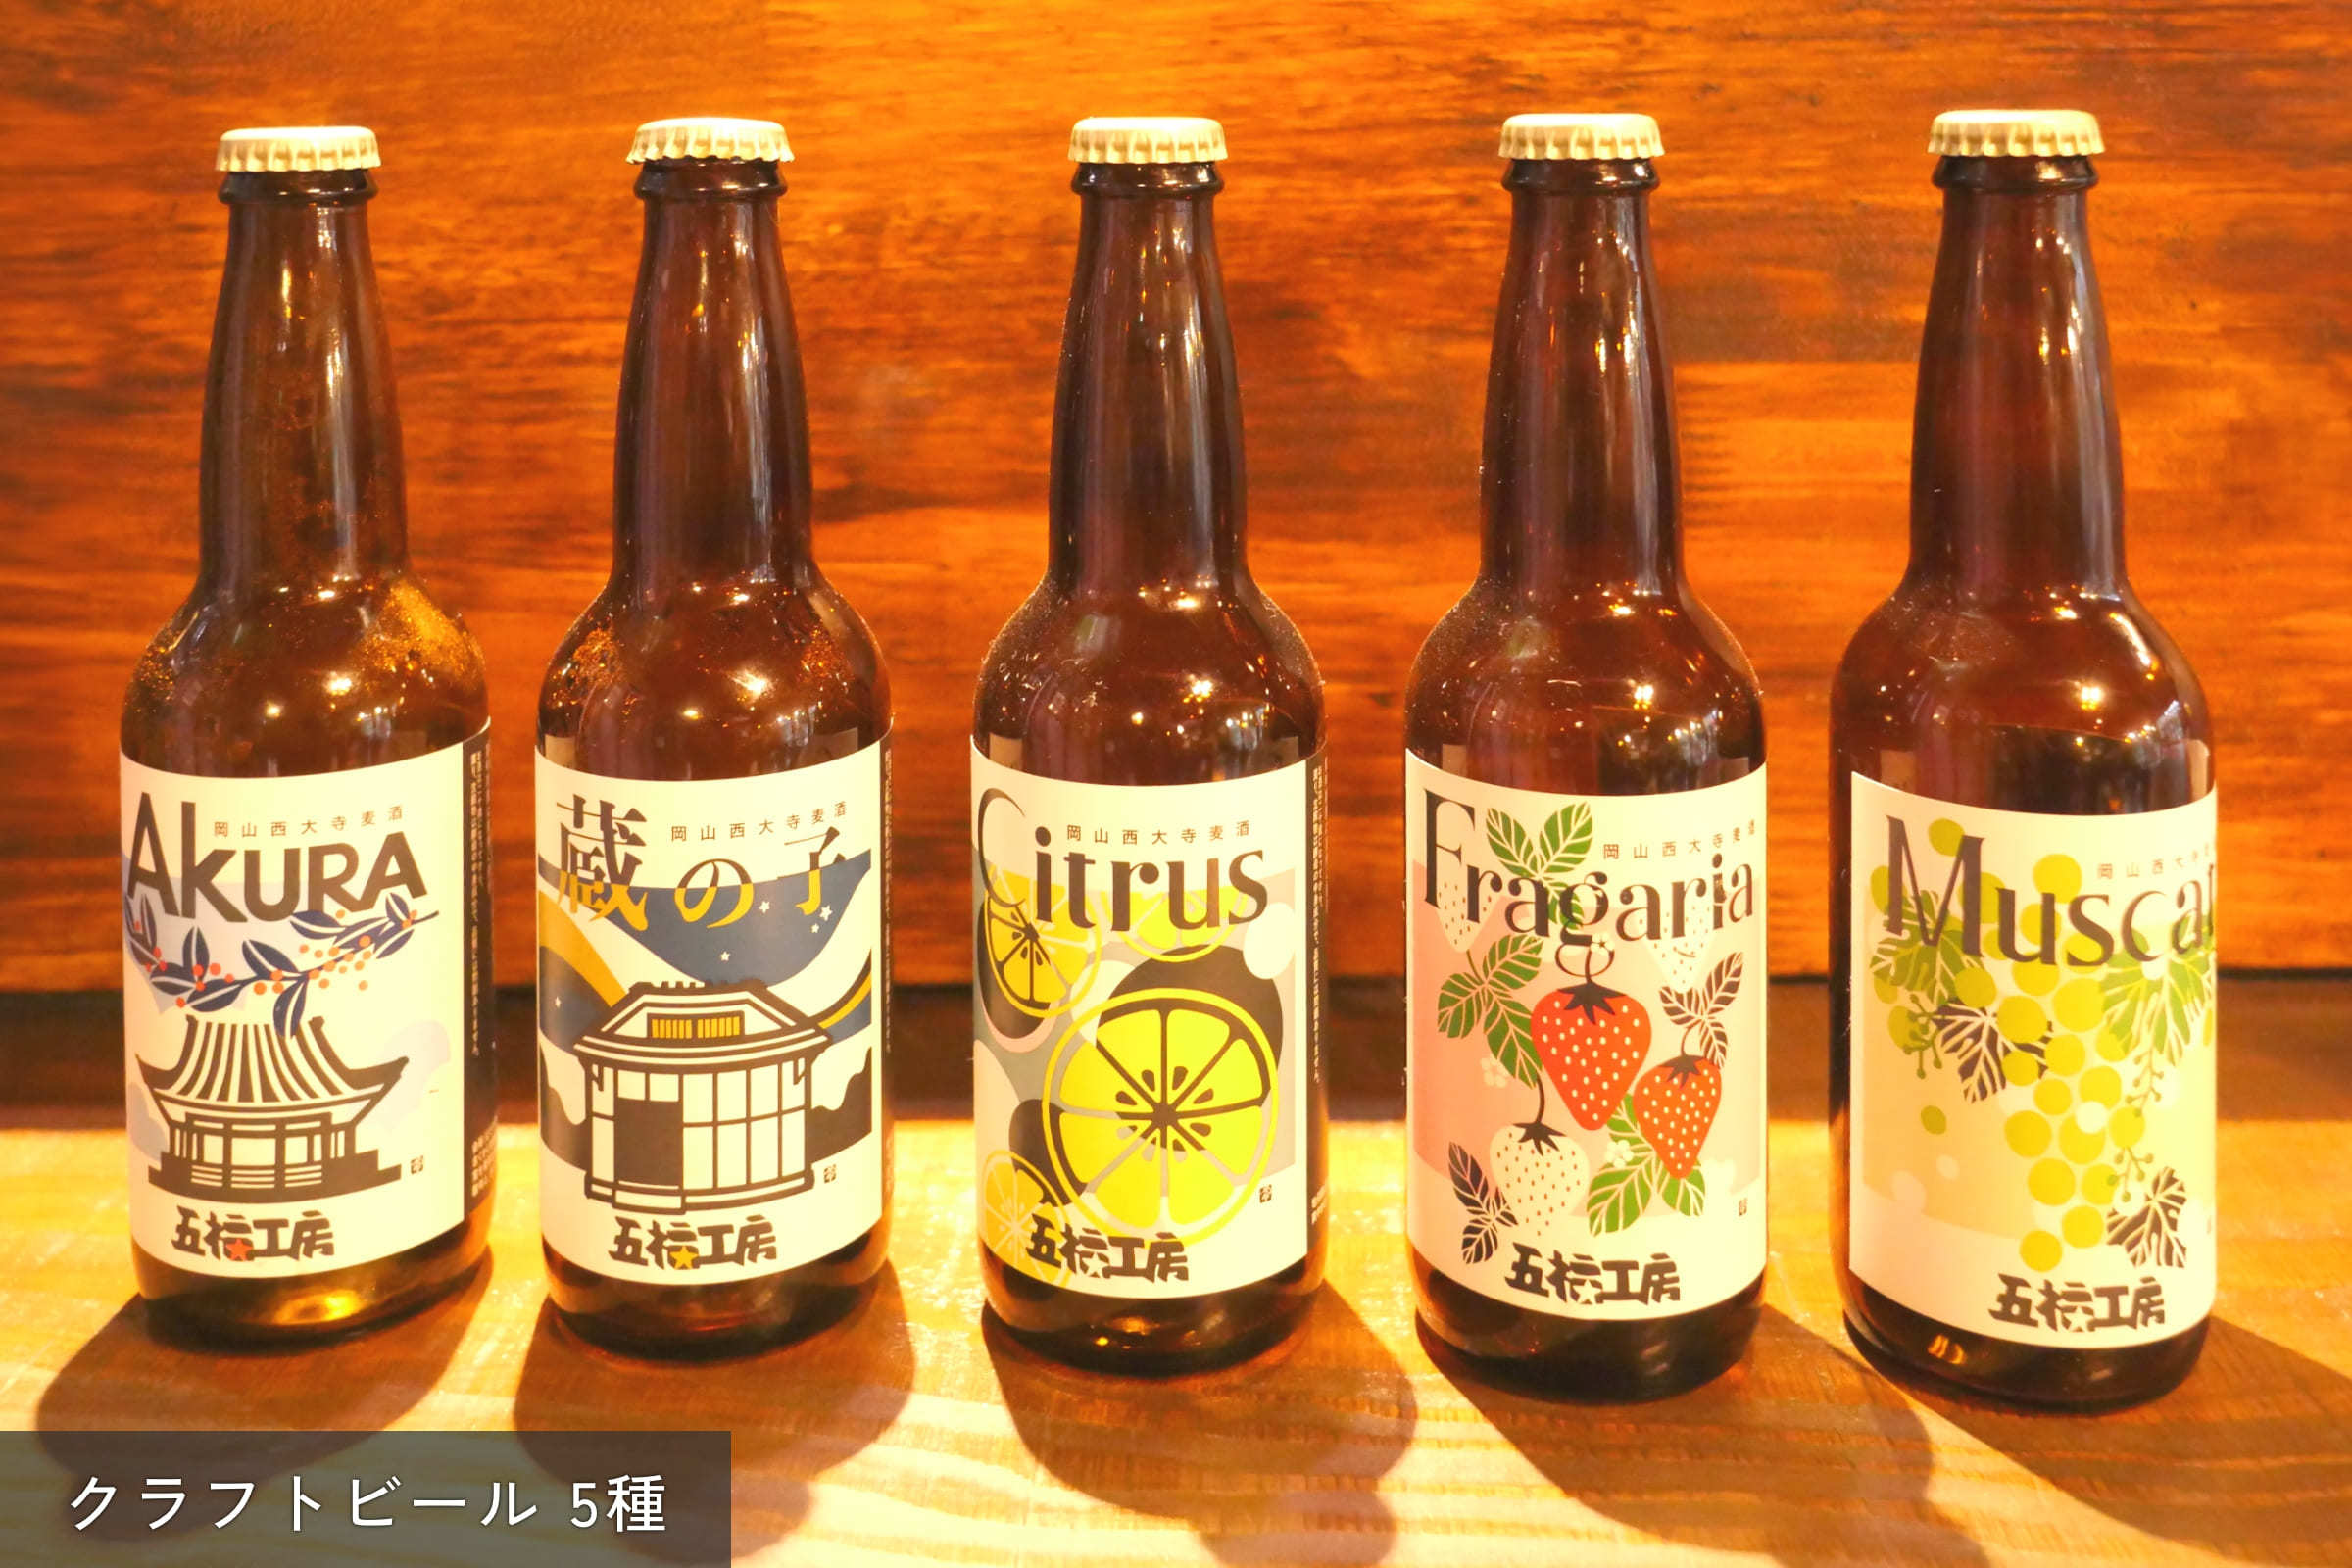 クラフトビールが5種類並んでいる写真